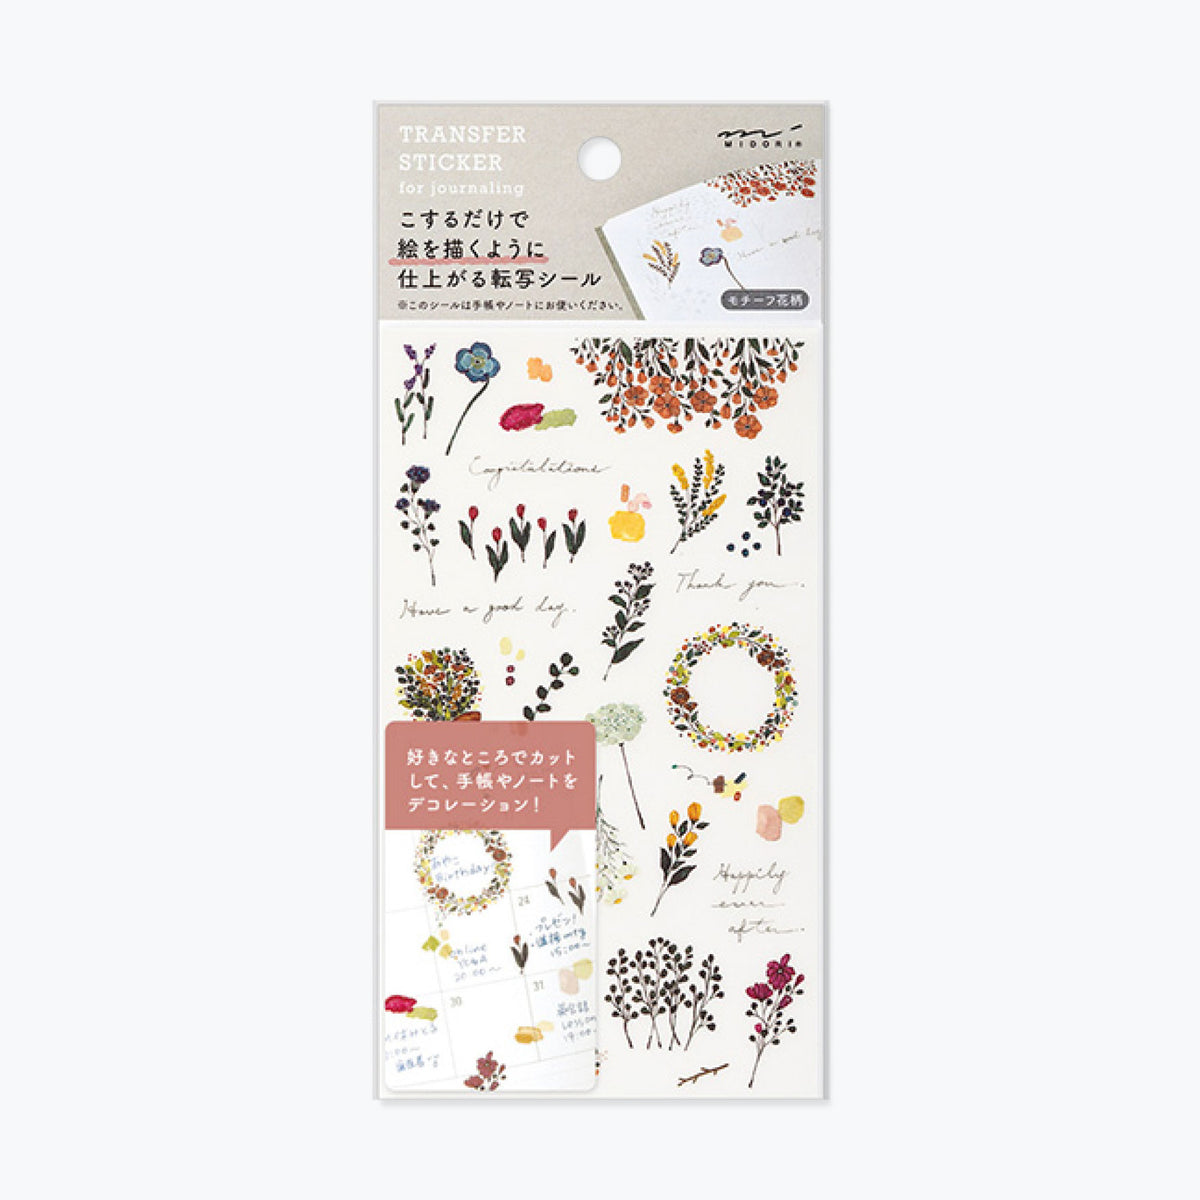 Midori - Sticker Seal - Transfer - Floral